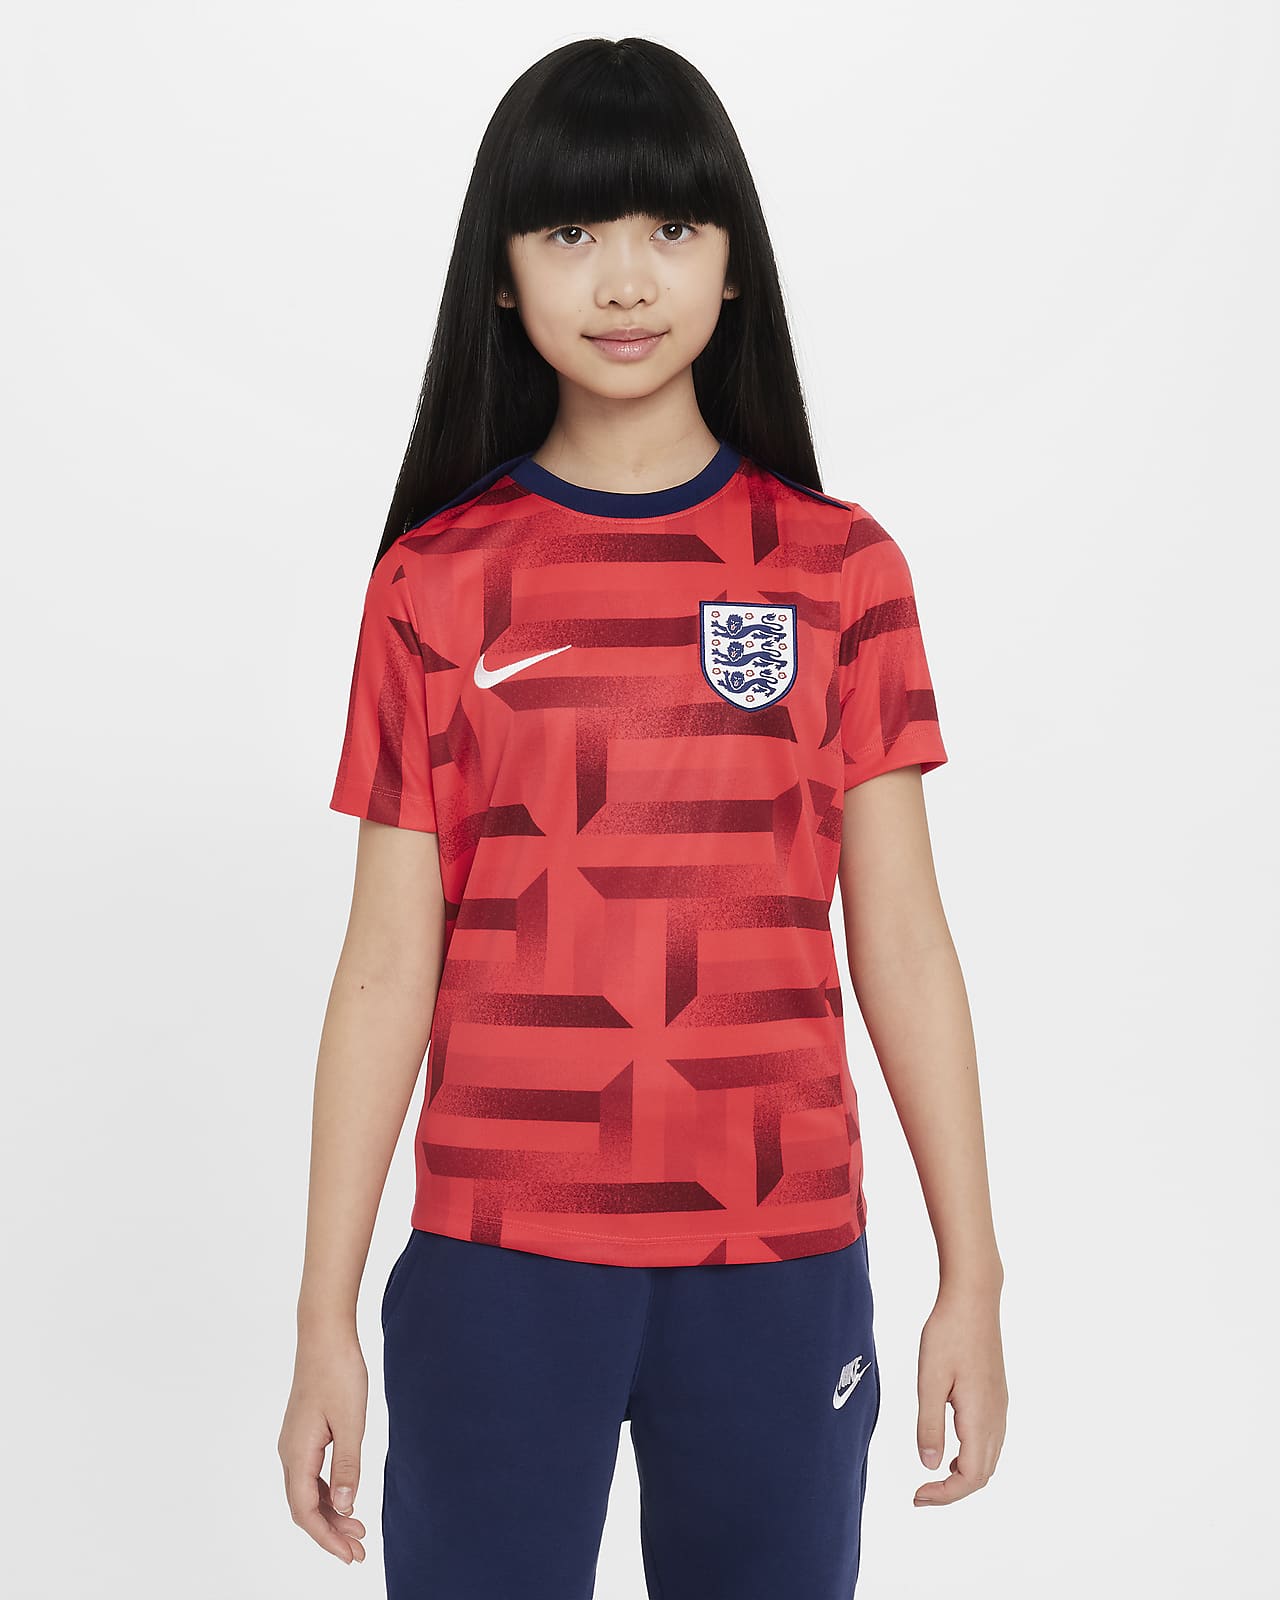 Anglia Academy Pro Nike Dri-FIT mérkőzés előtti rövid ujjú futballfelső nagyobb gyerekeknek